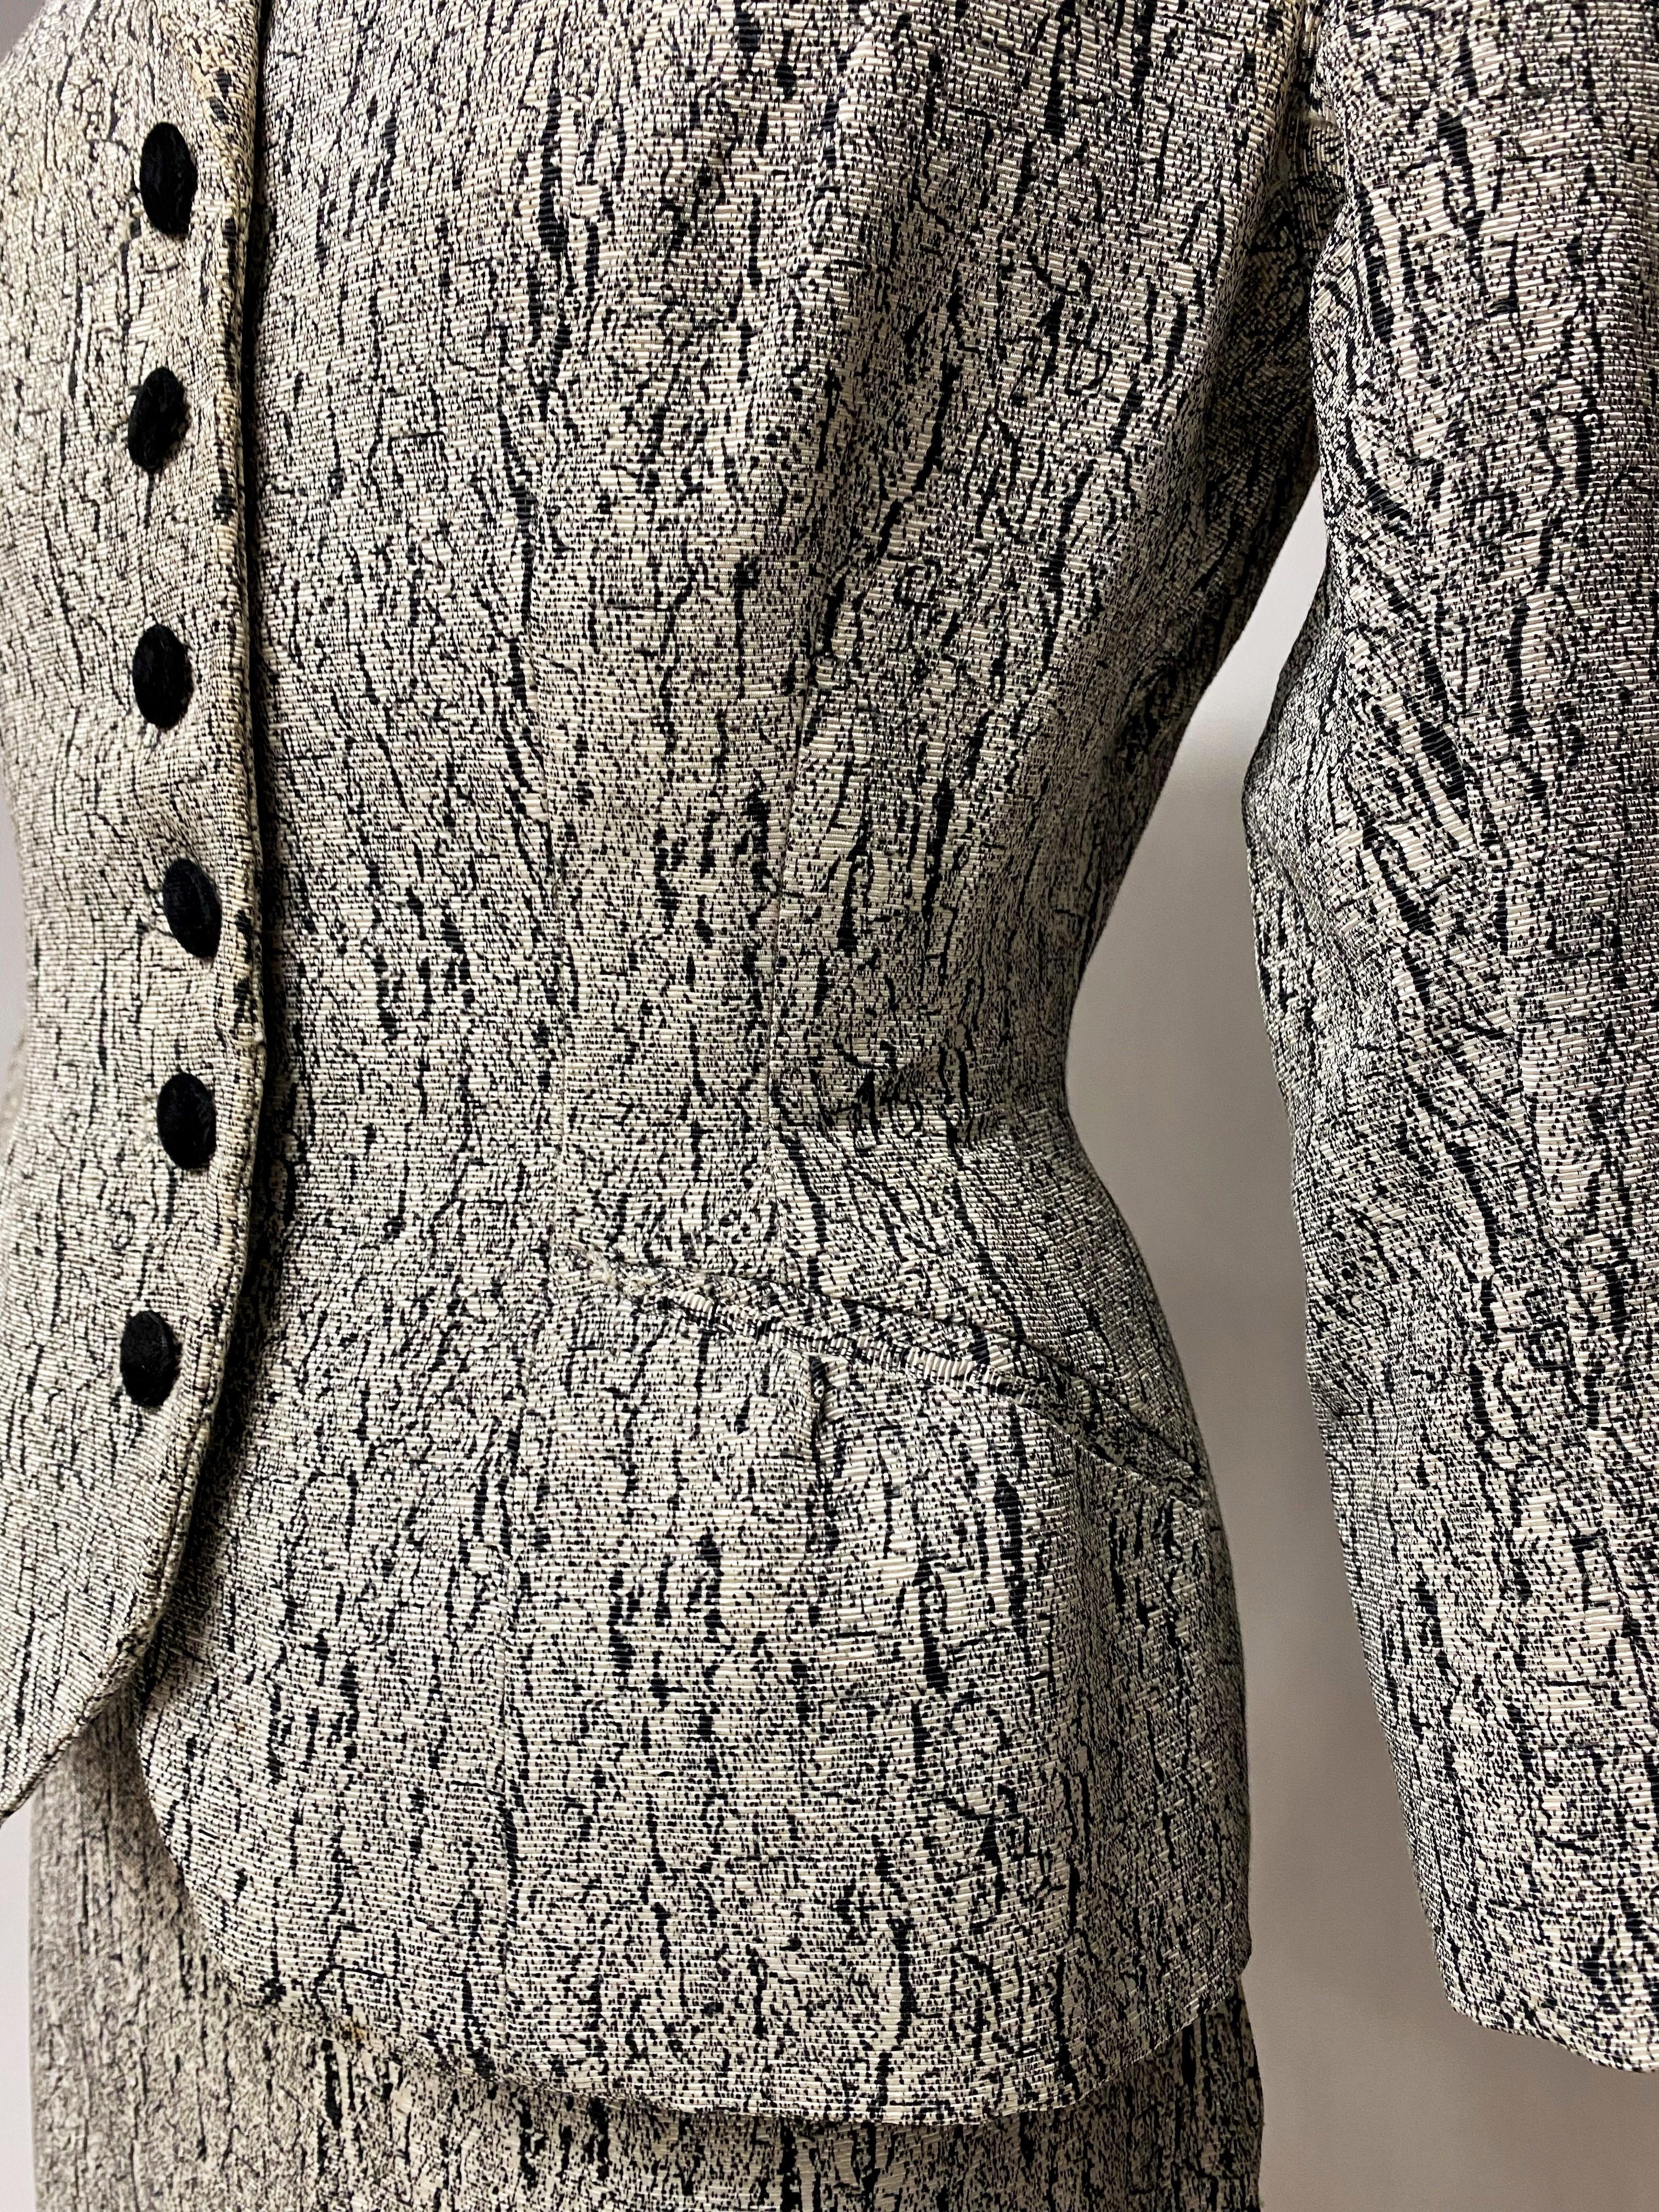 Circa 1947-1950

France 

Costume jupe non étiqueté Bar Haute Couture en faille de soie imprimée marbrée noire et blanche datant des années New-Look de Christian Dior. Veste à manches trois quarts, ajustée avec une forme rigide sur les hanches